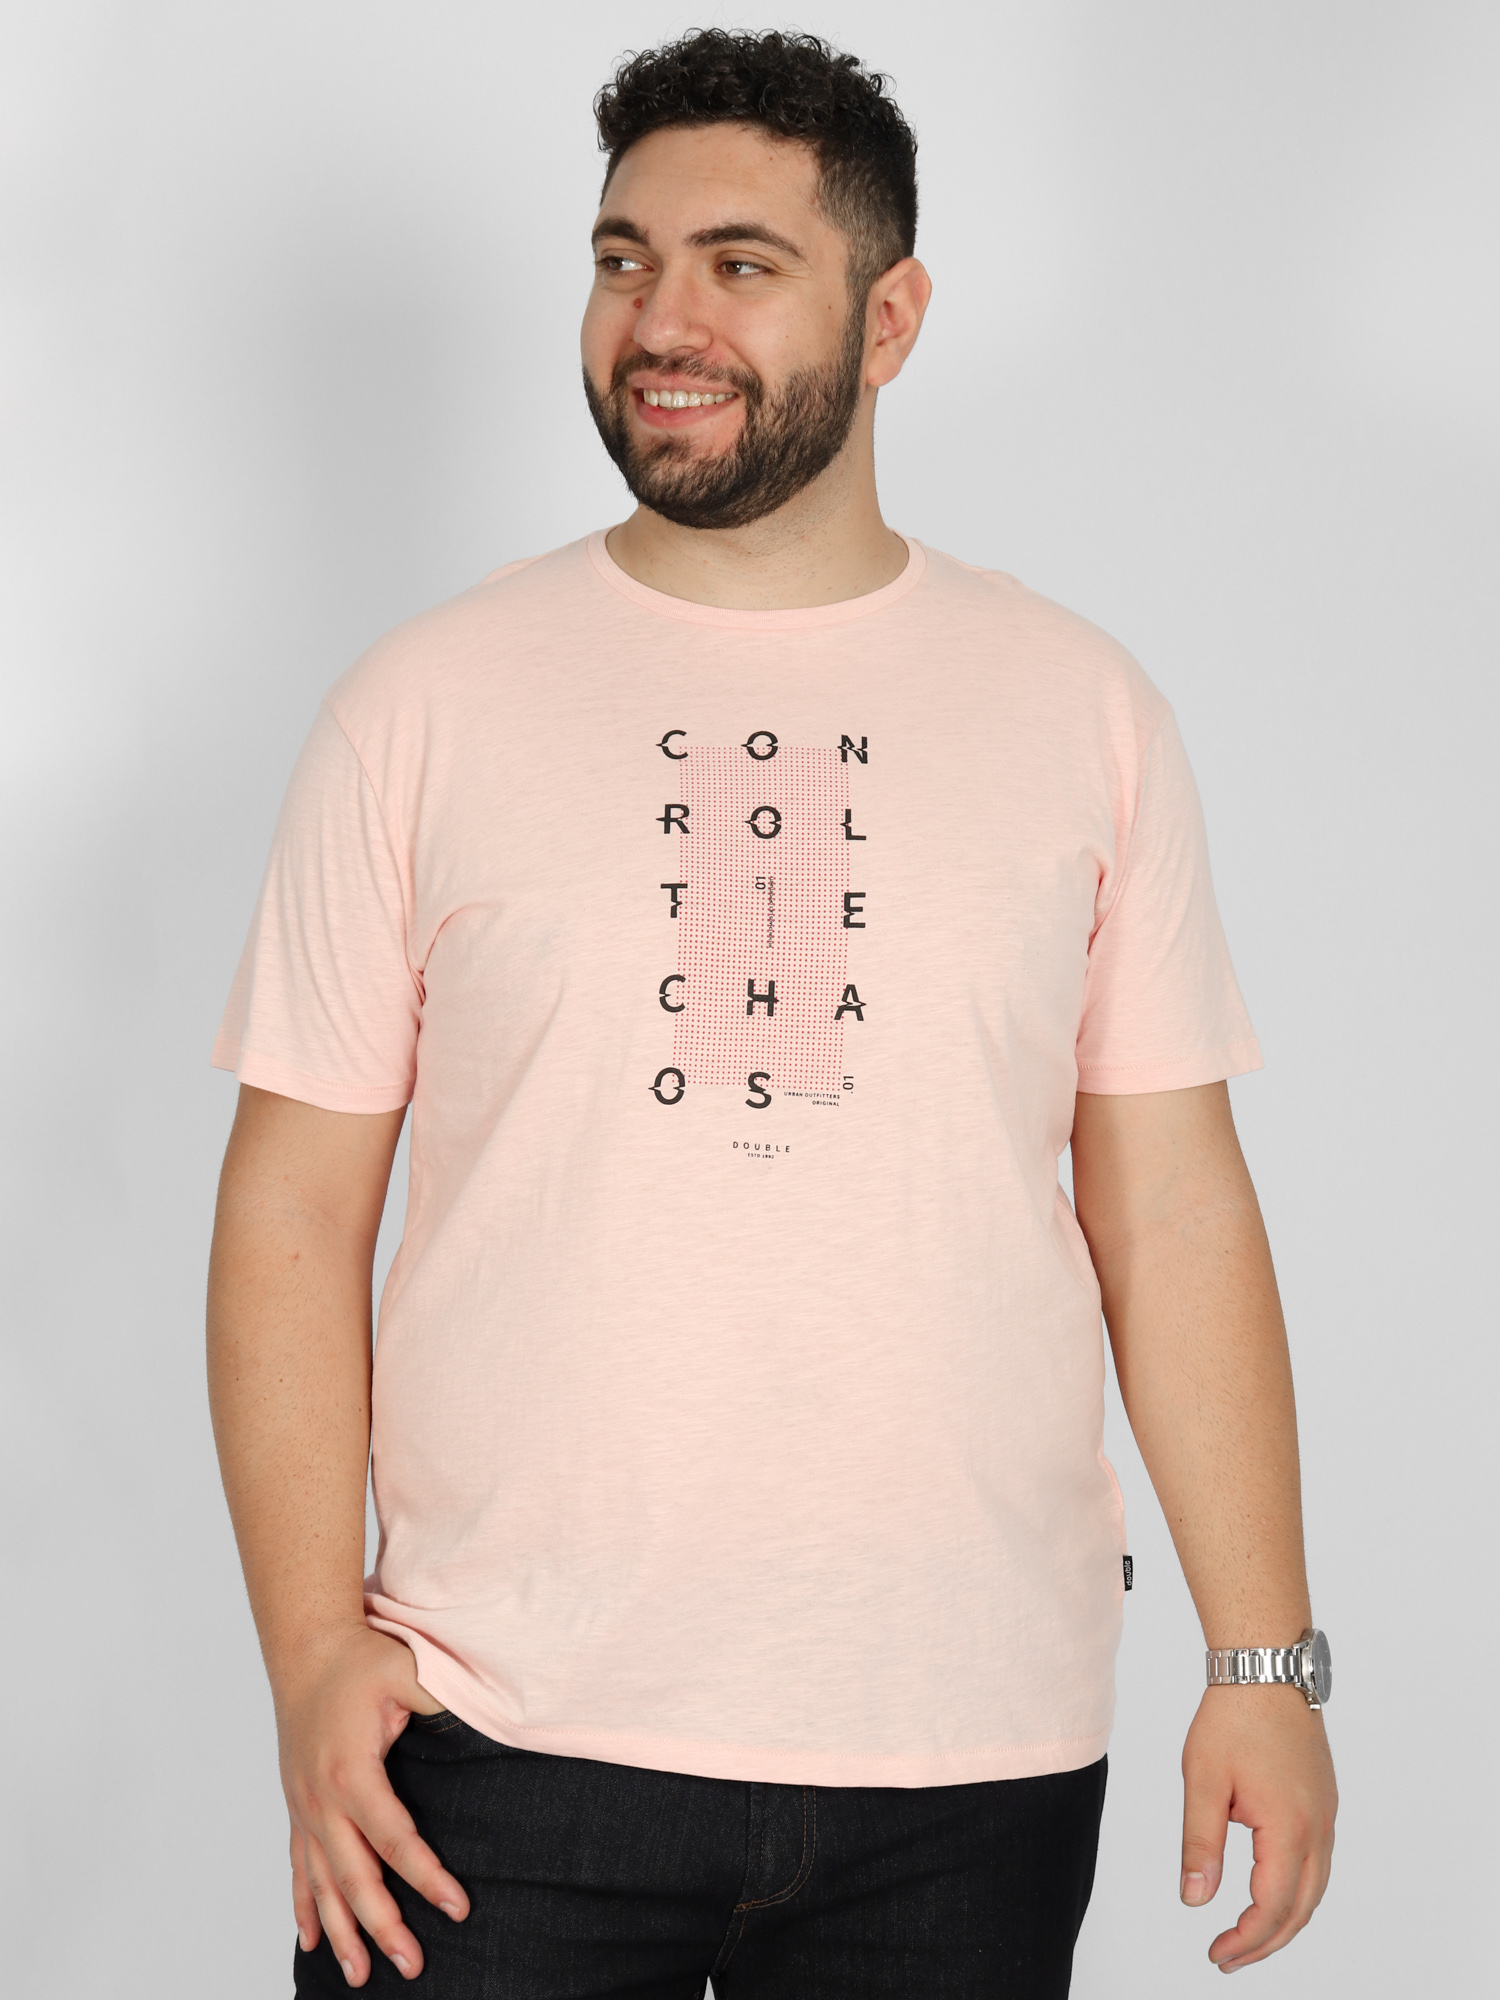 Ανδρικό T-Shirts Μακό Plus Size TS-201 - Ροζ